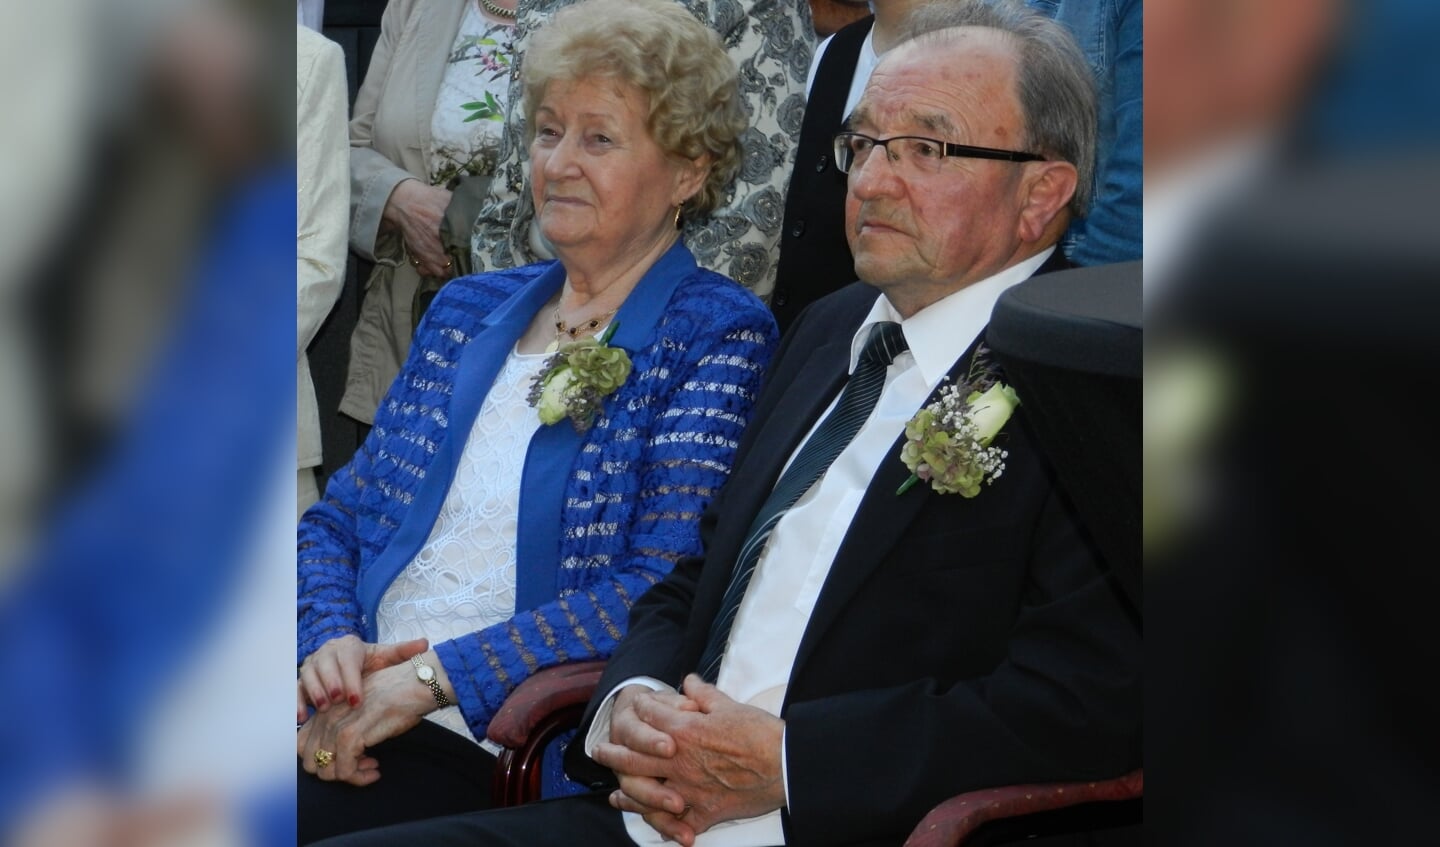 Koos en Dien van Lankveld zijn 65 jaar getrouwd.